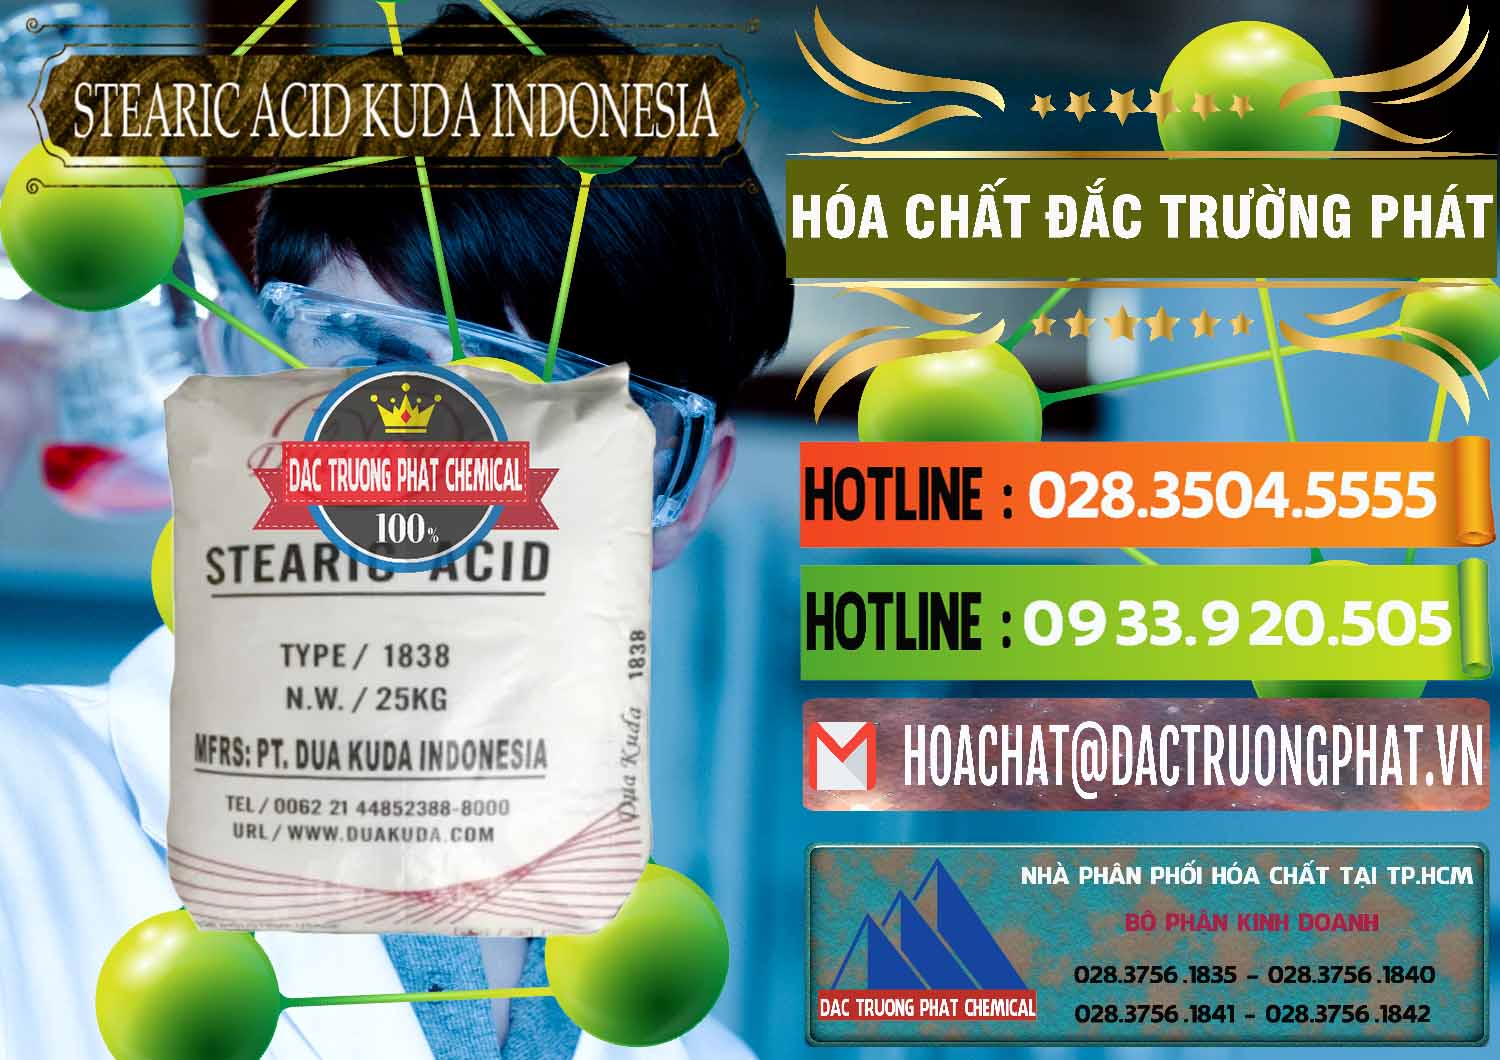 Nơi chuyên kinh doanh và bán Axit Stearic - Stearic Acid Dua Kuda Indonesia - 0388 - Nơi chuyên cung cấp & bán hóa chất tại TP.HCM - cungcaphoachat.com.vn